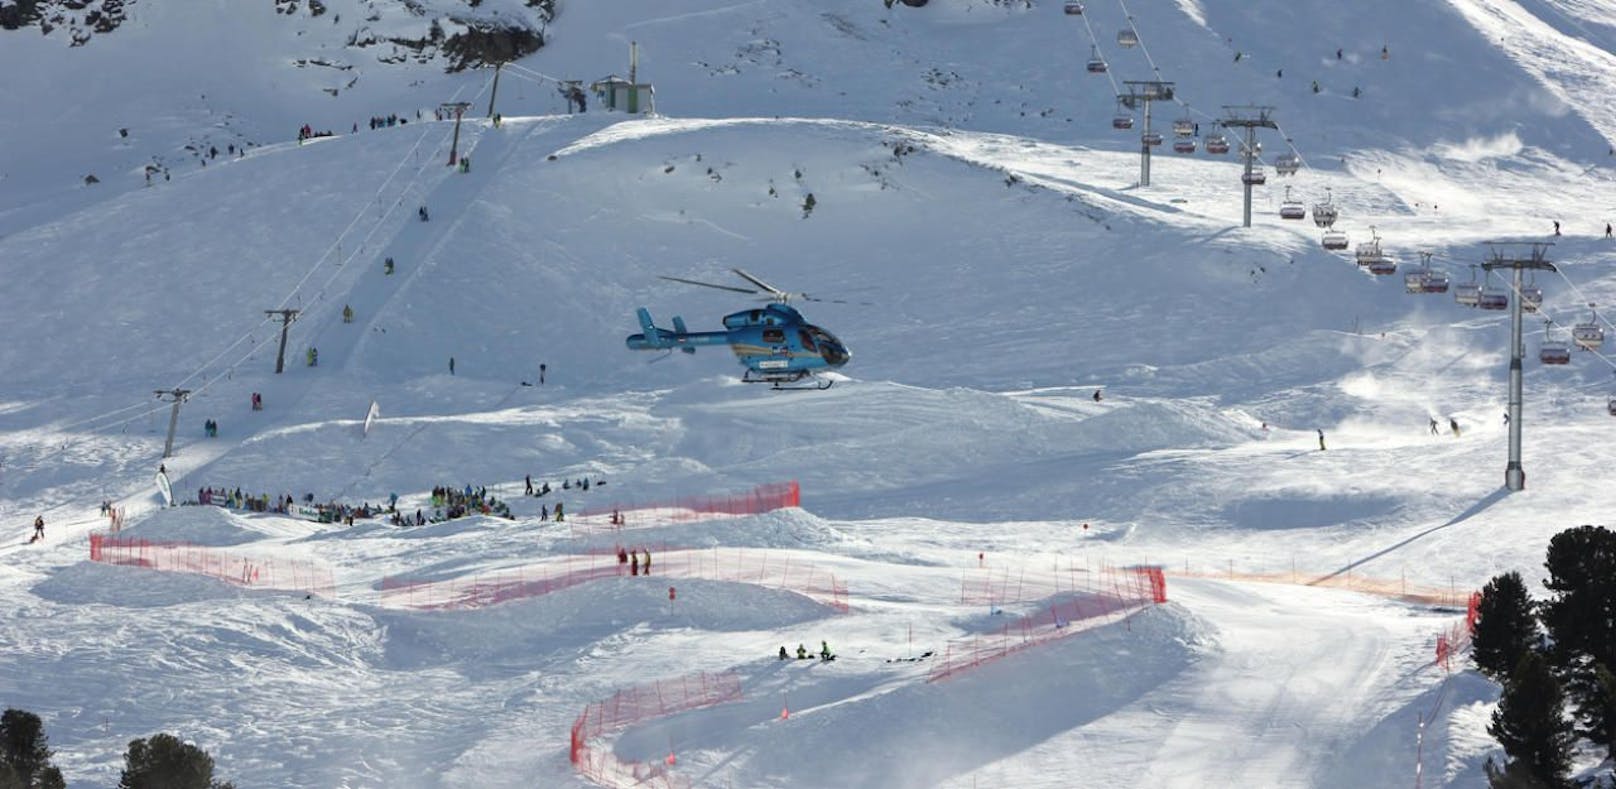 Die verletzte Skifahrerin wurde mit dem Hubschrauber ins Spital geflogen